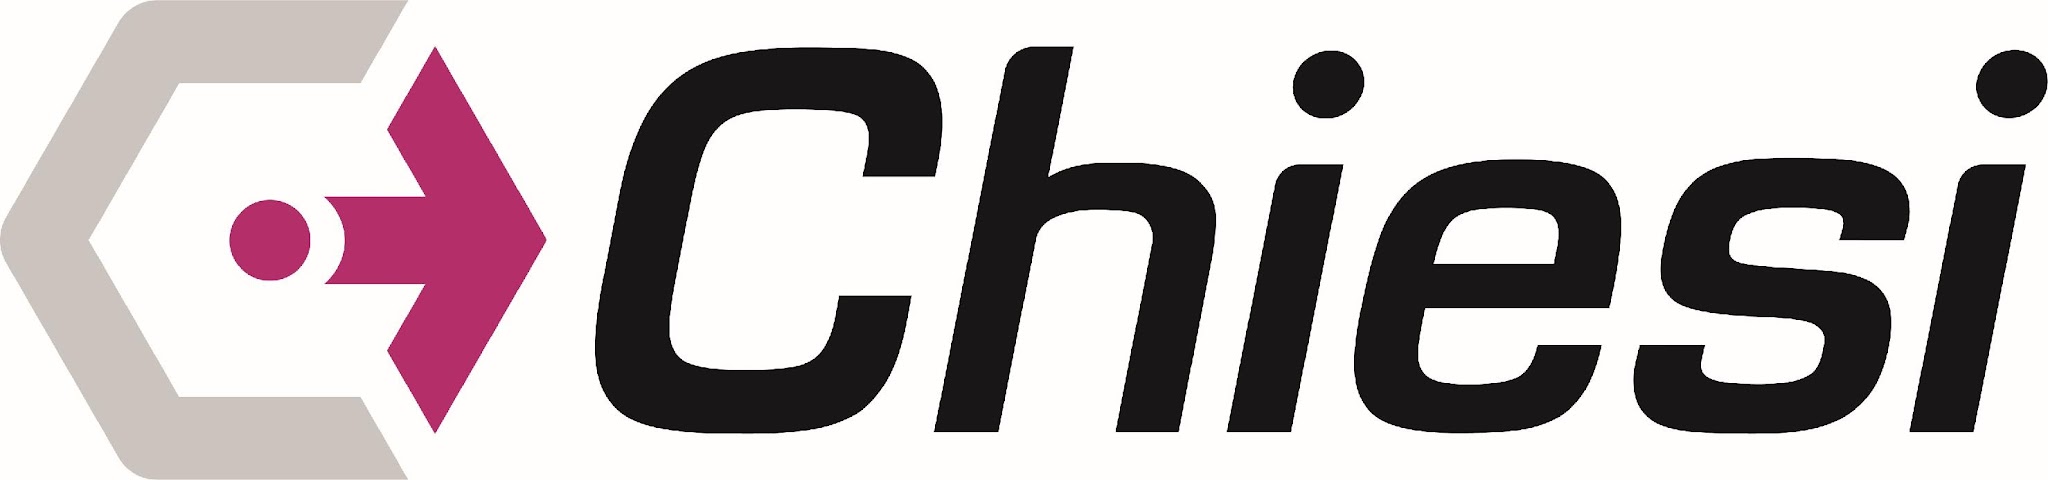 Logotipo, nome da empresa

Descrição gerada automaticamente